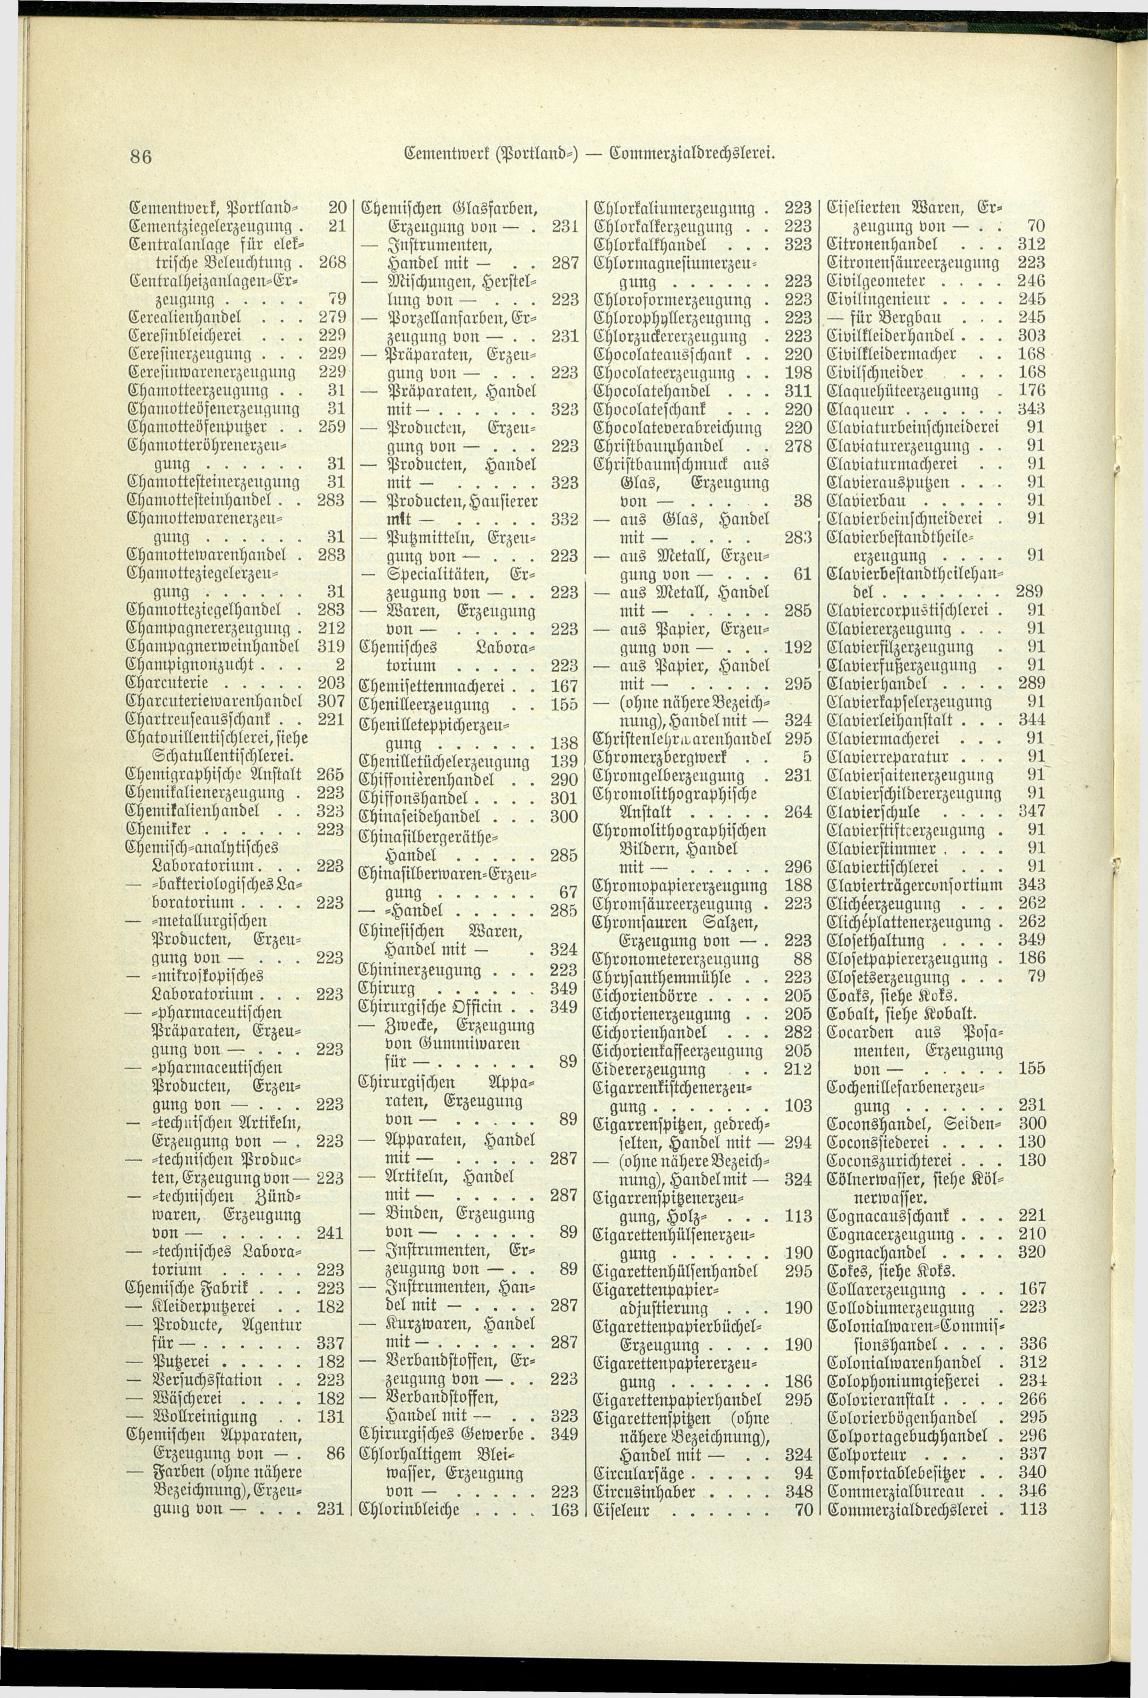 Verzeichnis der Gewerbe der im Reichsrathe vertretenen Königreiche und Länder 1900 - Seite 90